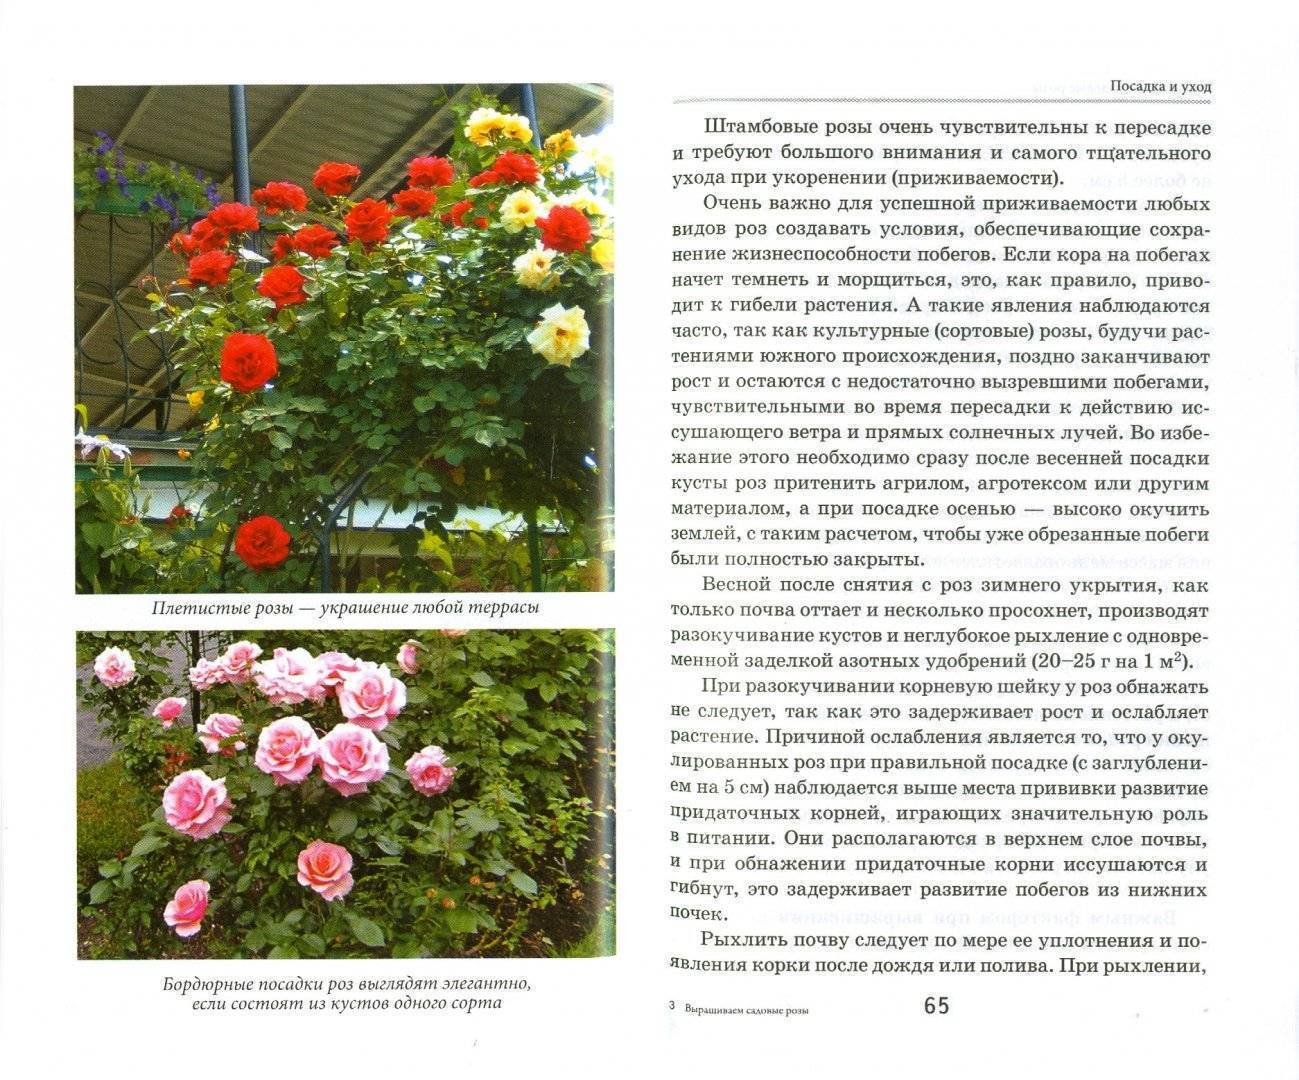 Земляника флорентина: фото, описание, урожайность - сибирский сад